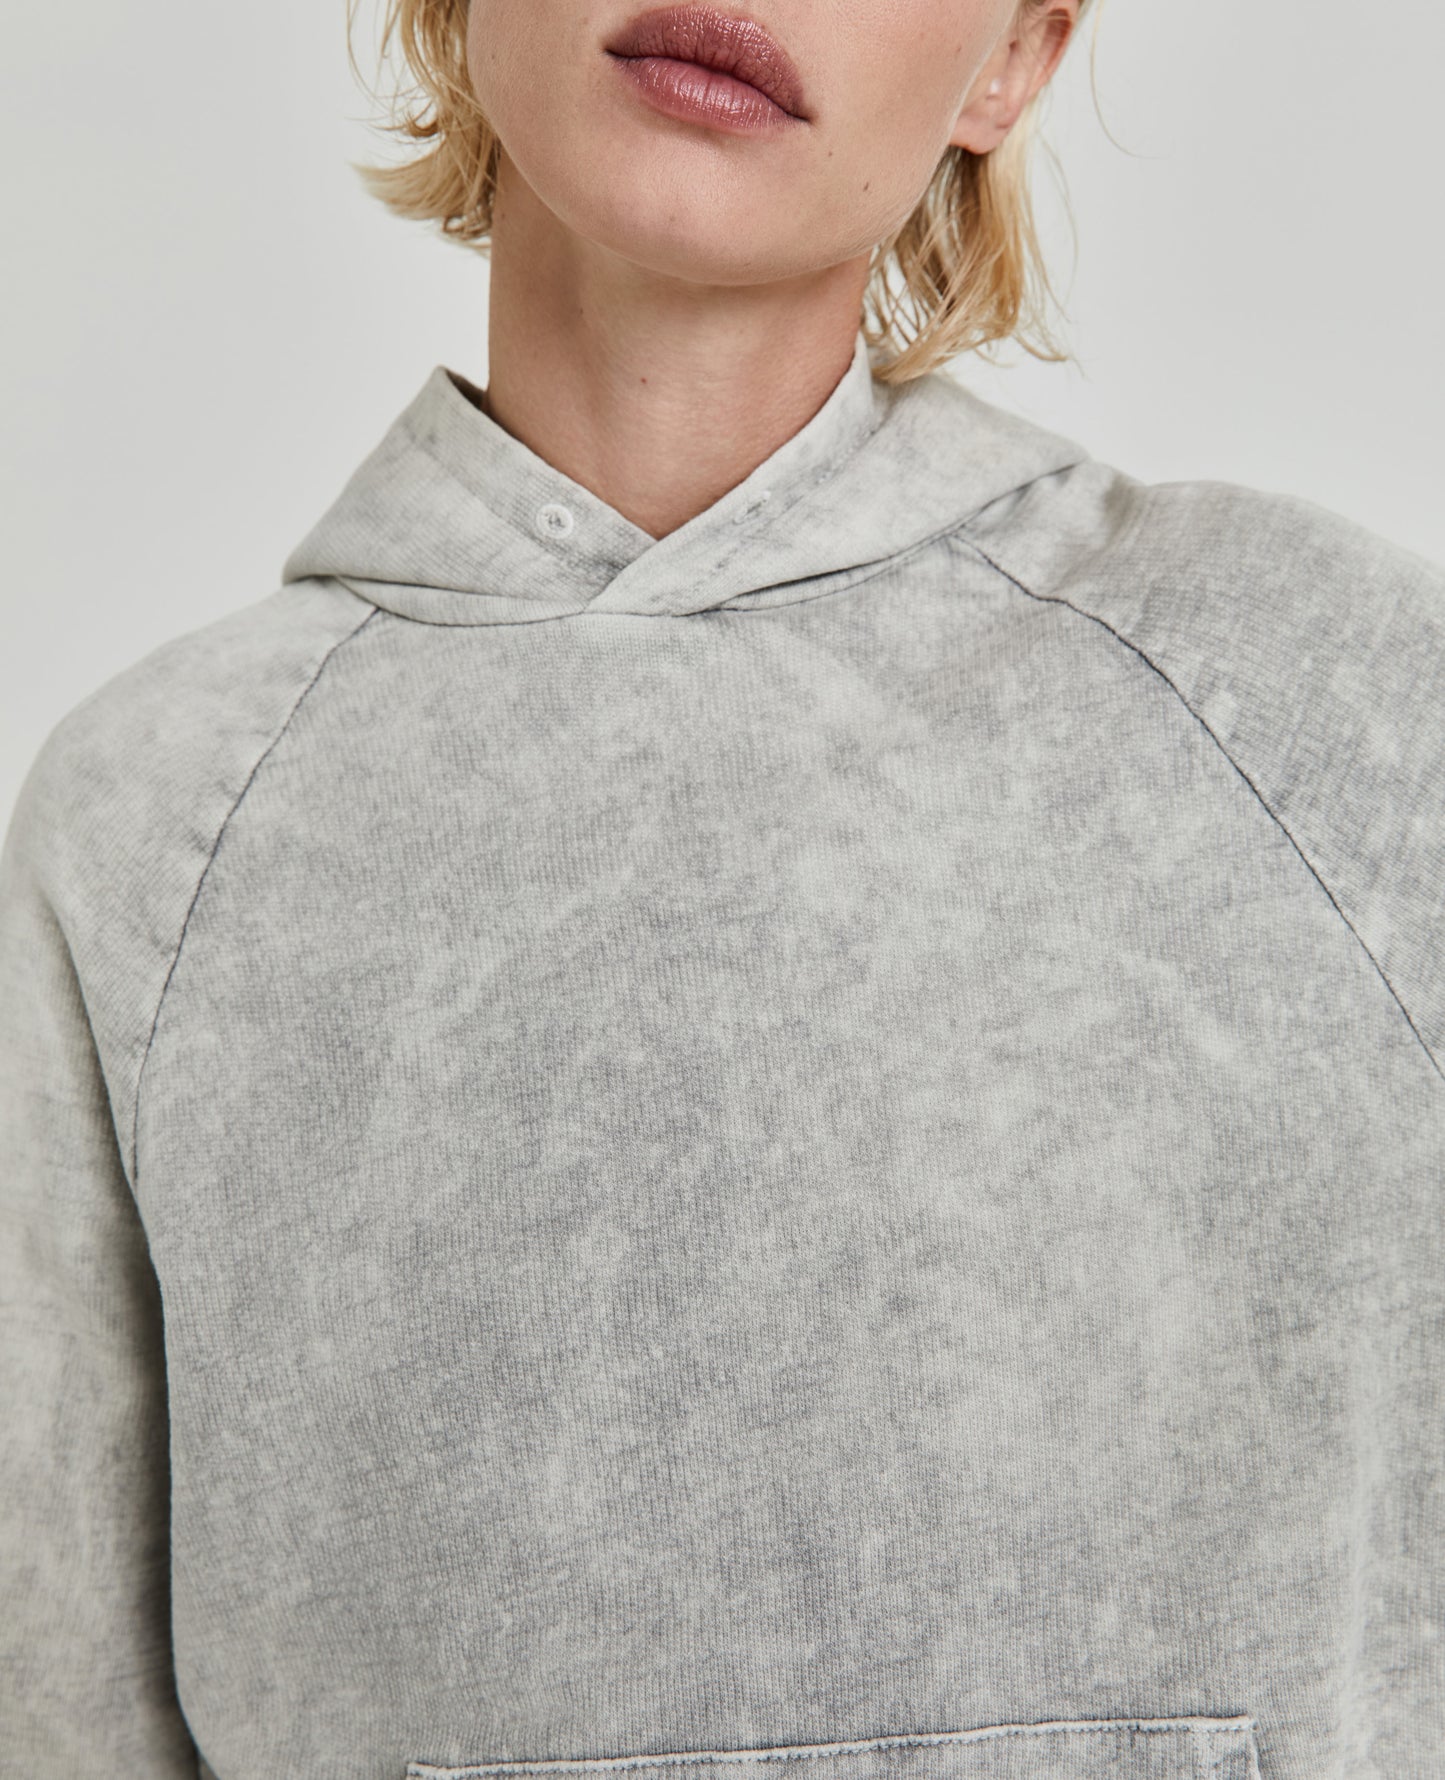 Cali Hoodie Moonwash Florence Fog Vintage Hooded Sweatshirt Women Tops Photo 4